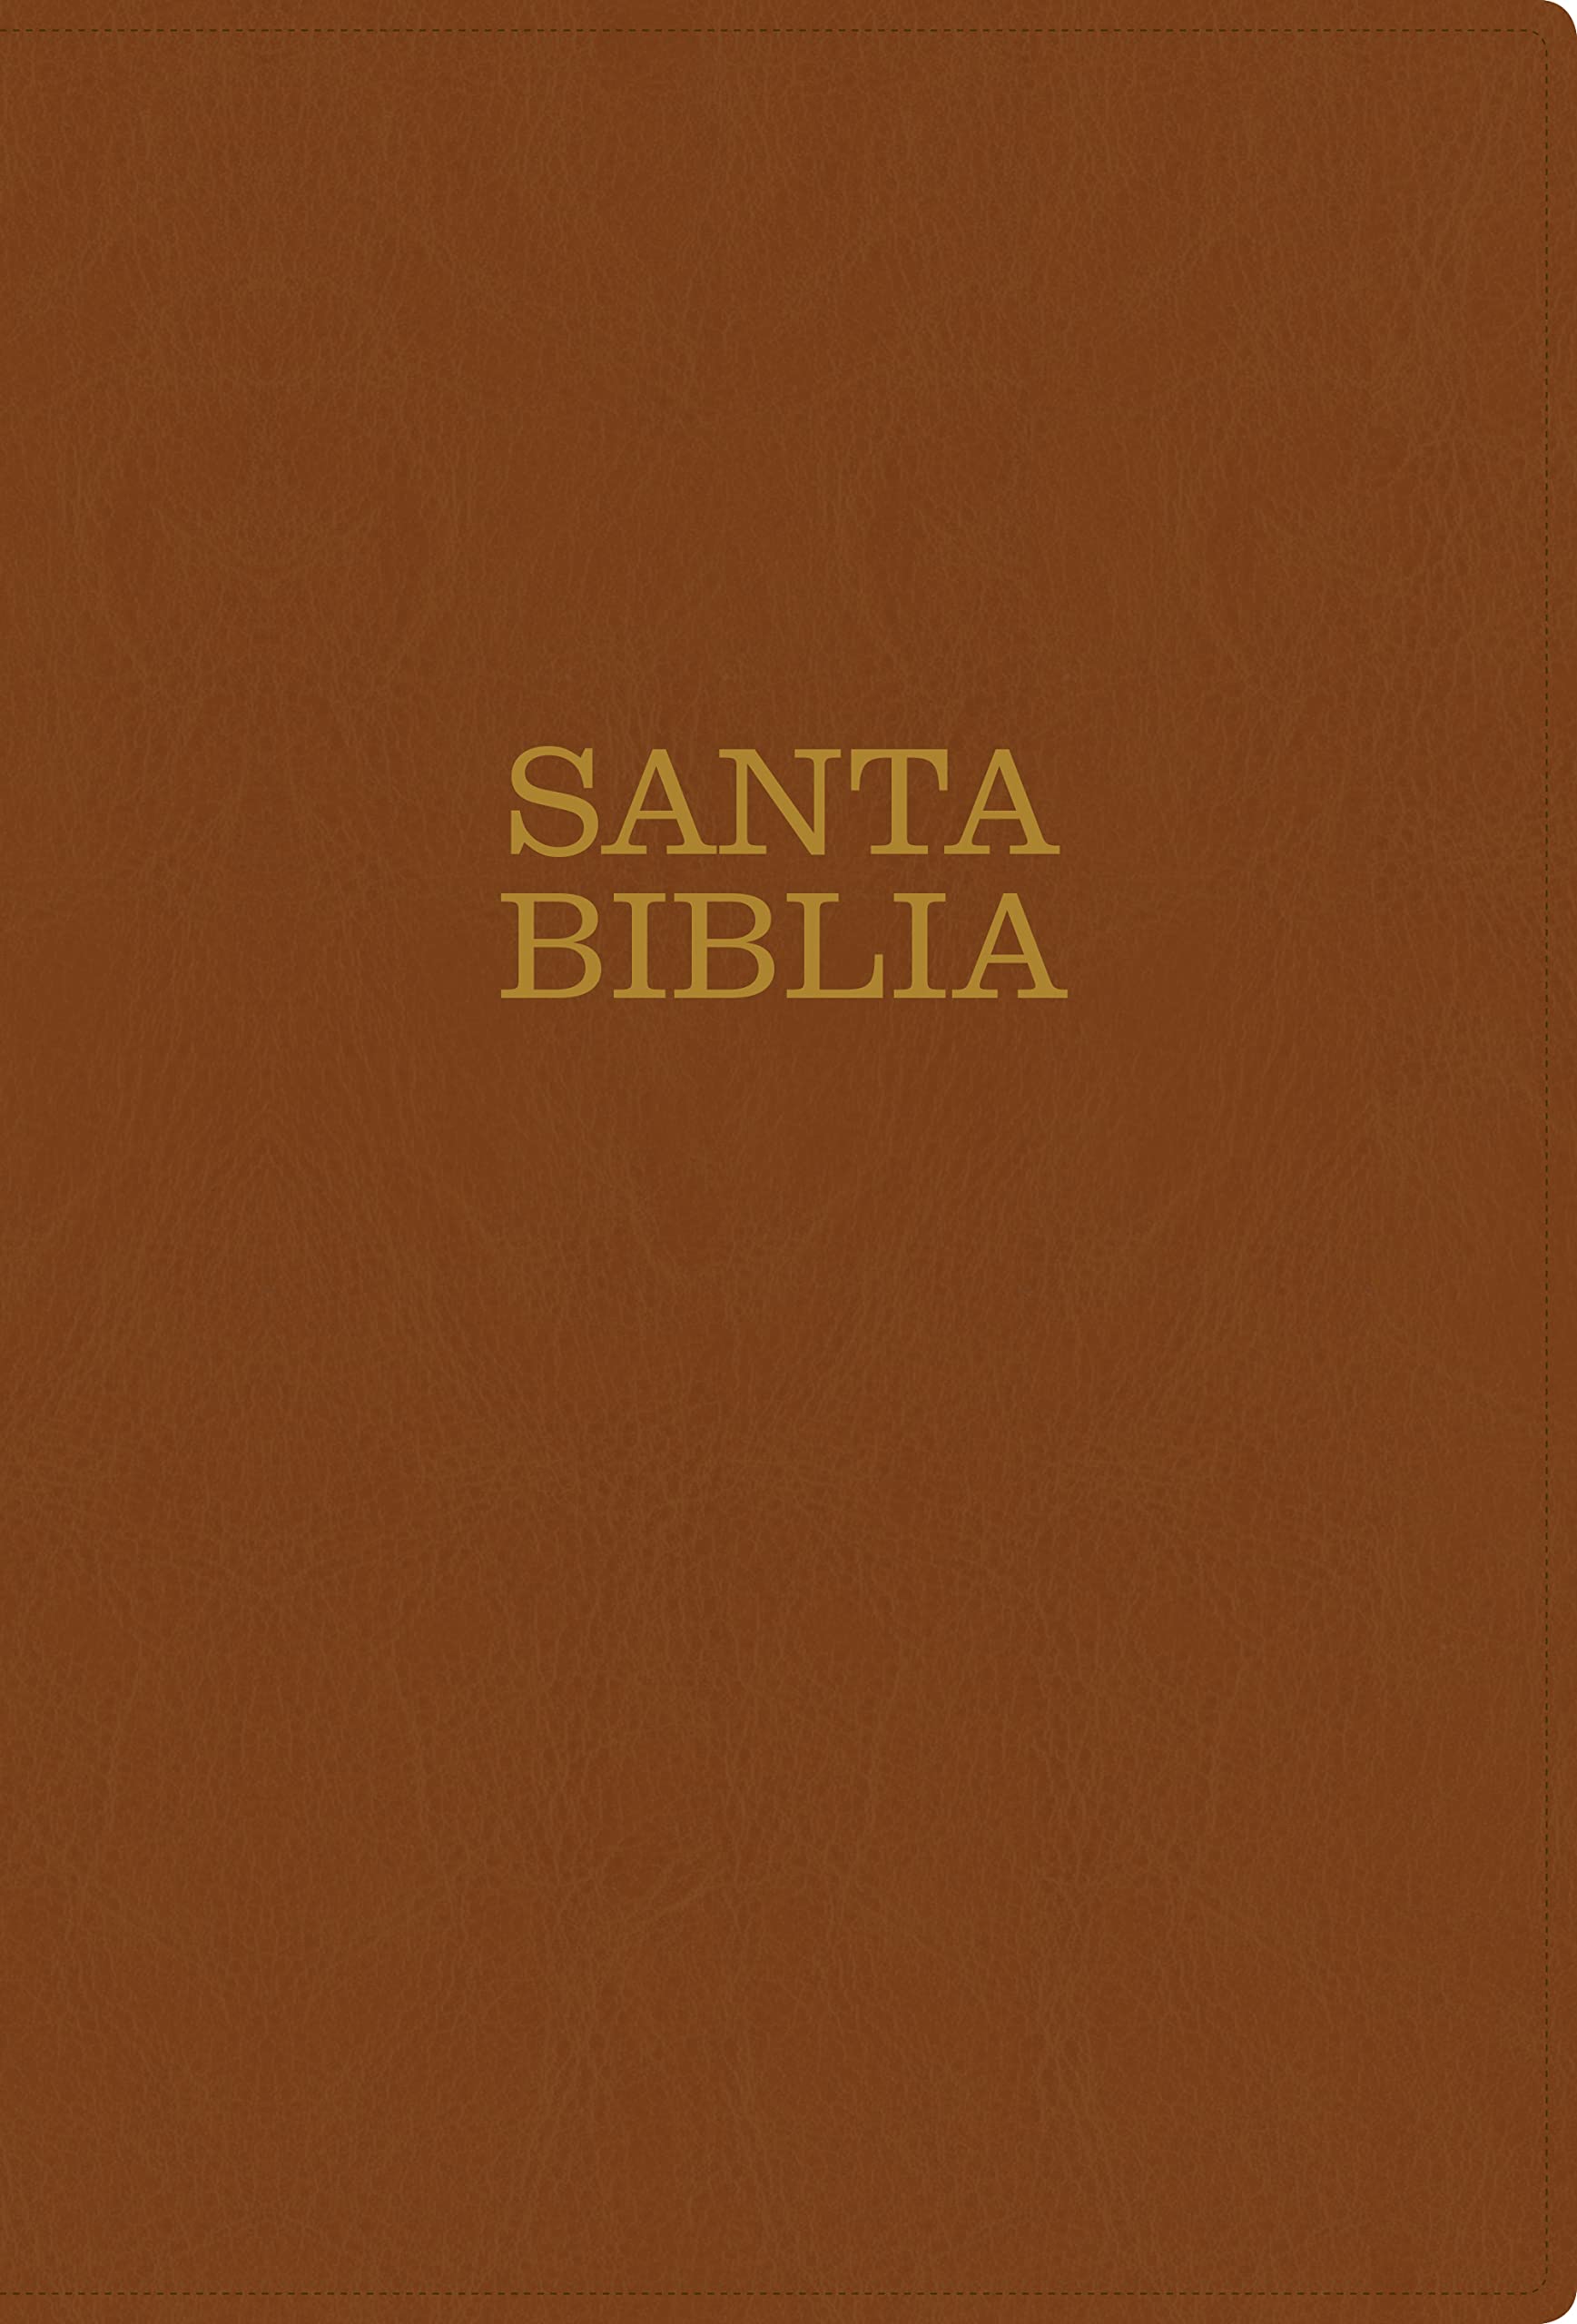 Biblia NTV Letra super gigante café claro - Librería Libros Cristianos - Biblia